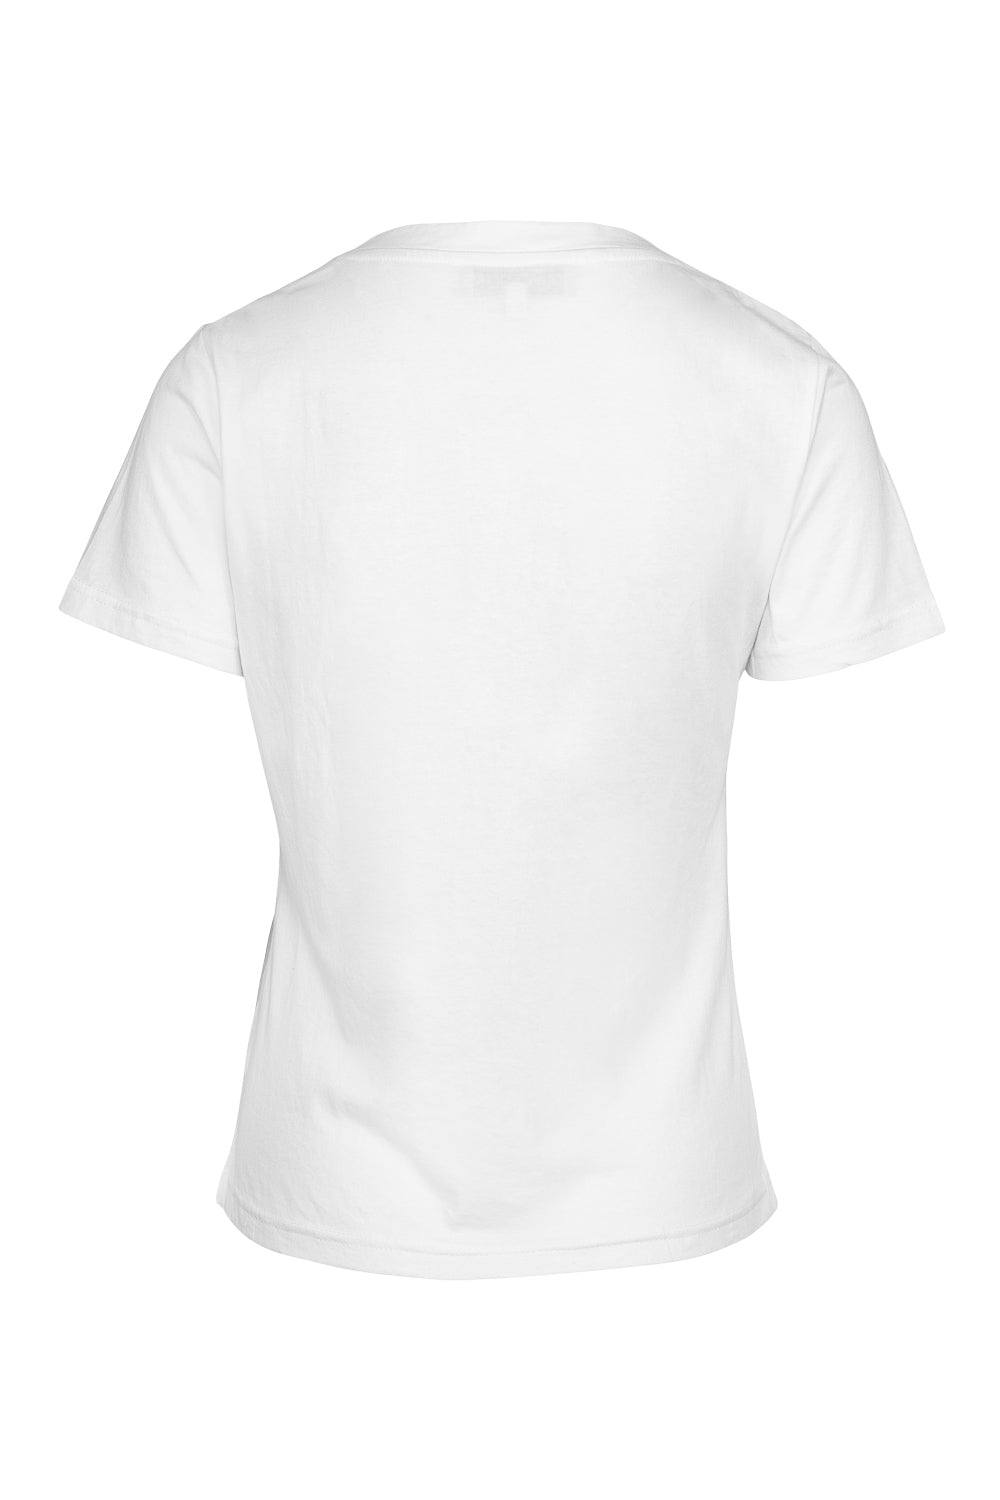 Ziggy T-shirt White